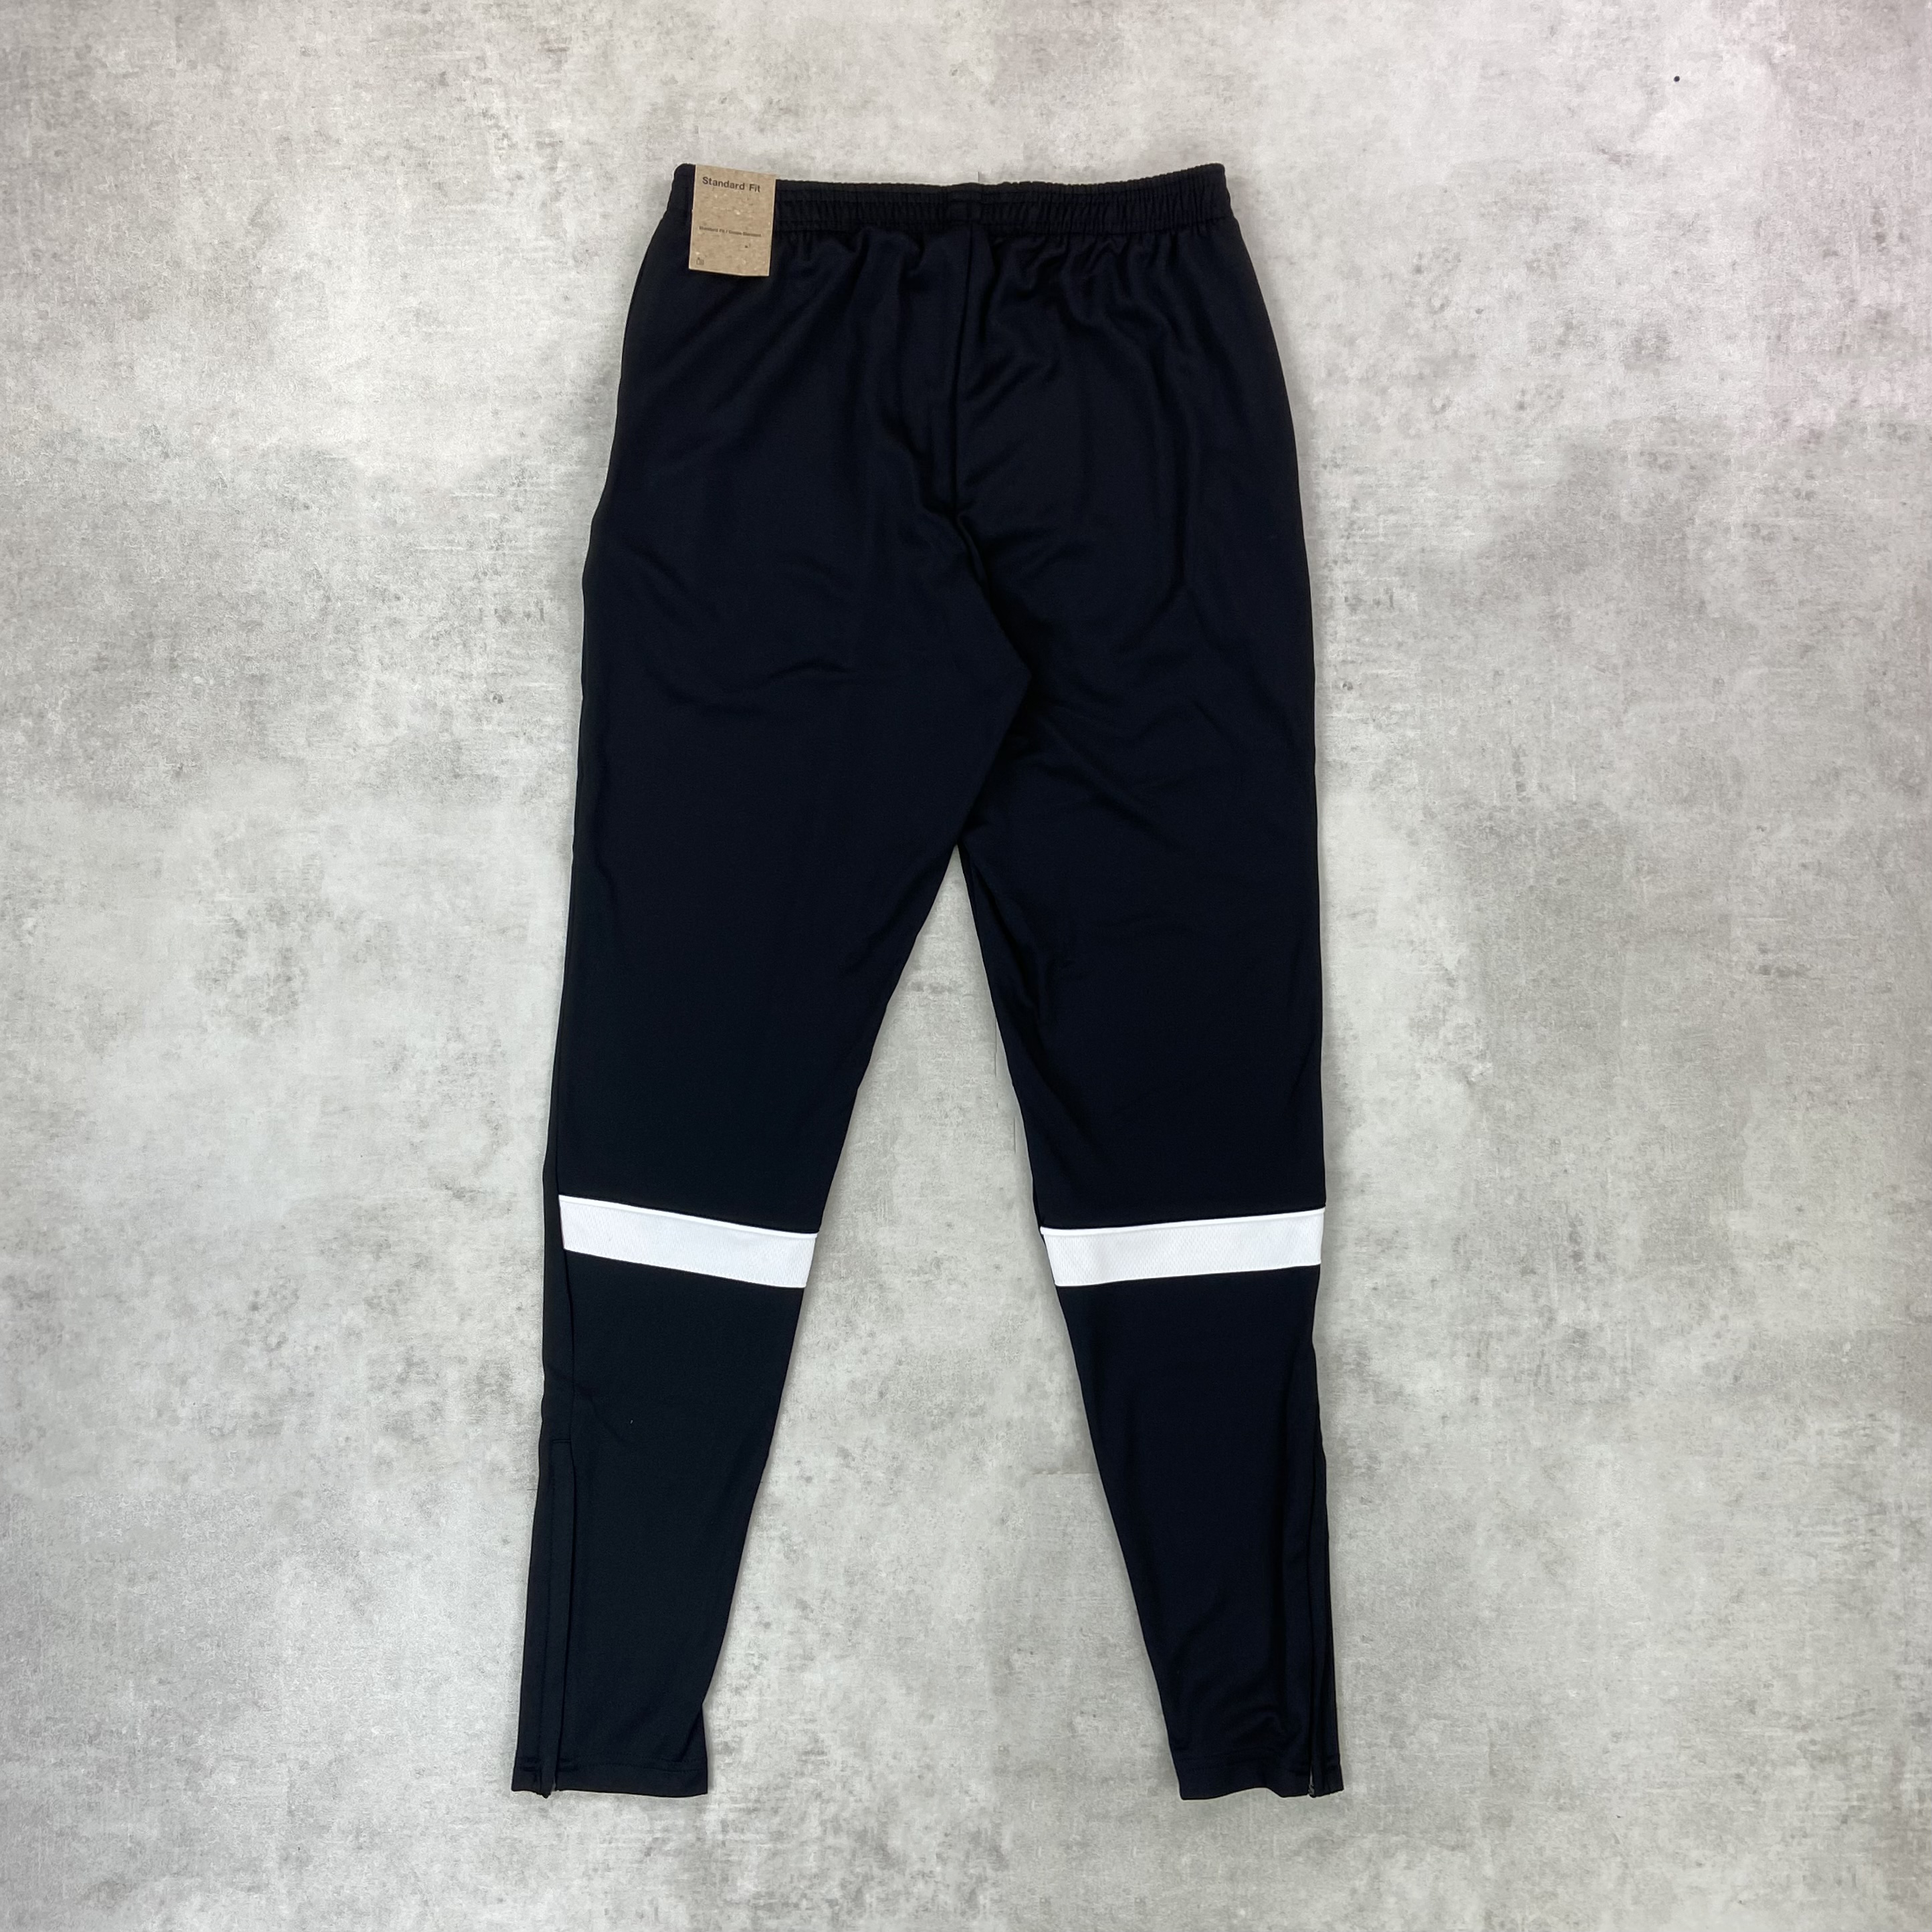 Nike Drill Pants Black/White